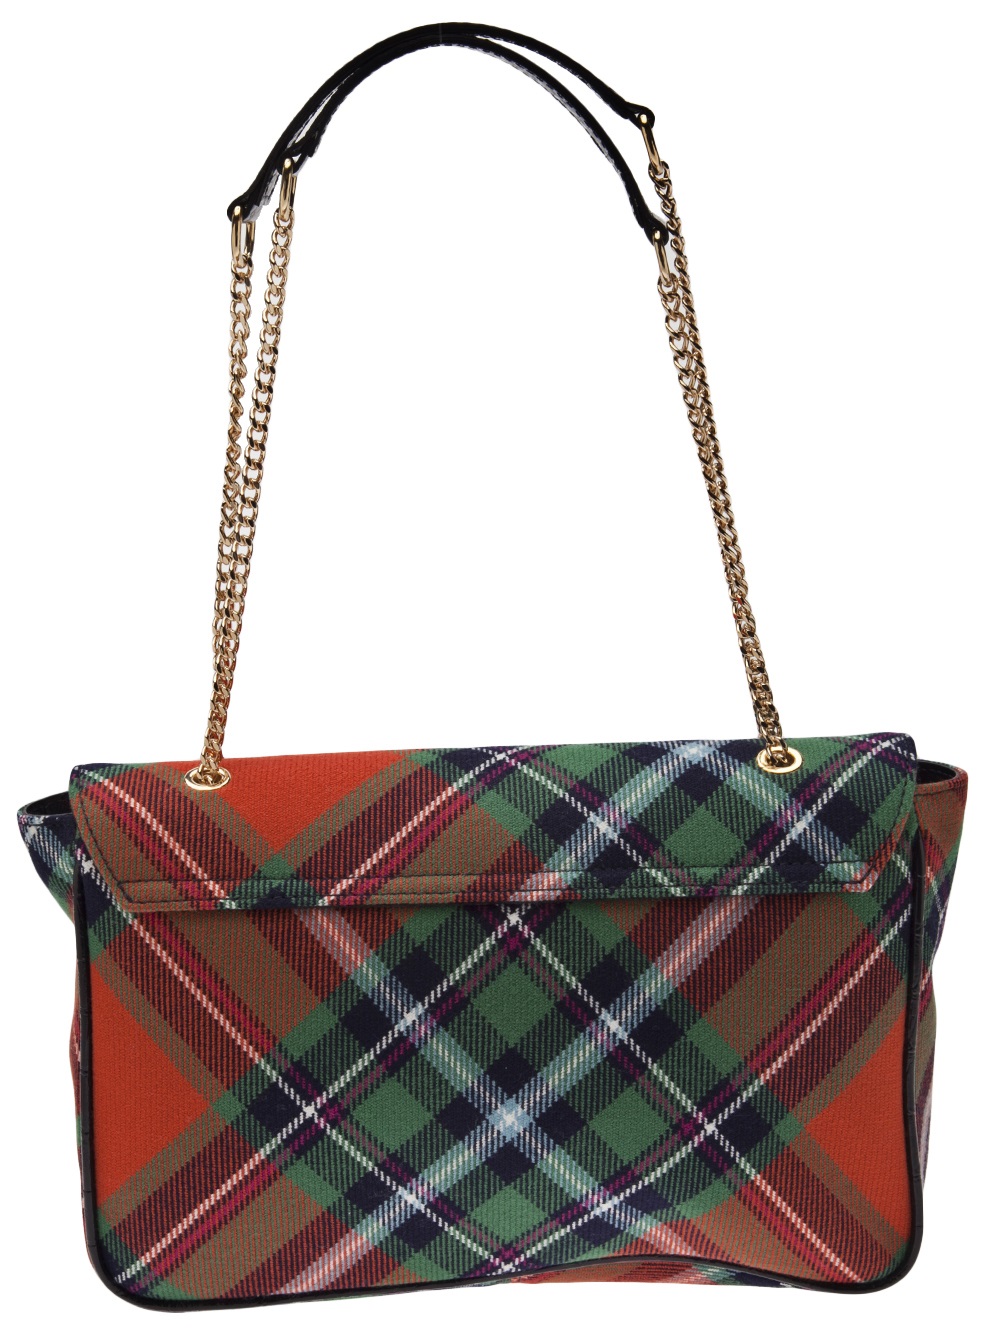 Lyst - Vivienne Westwood Winter Tartan Bag